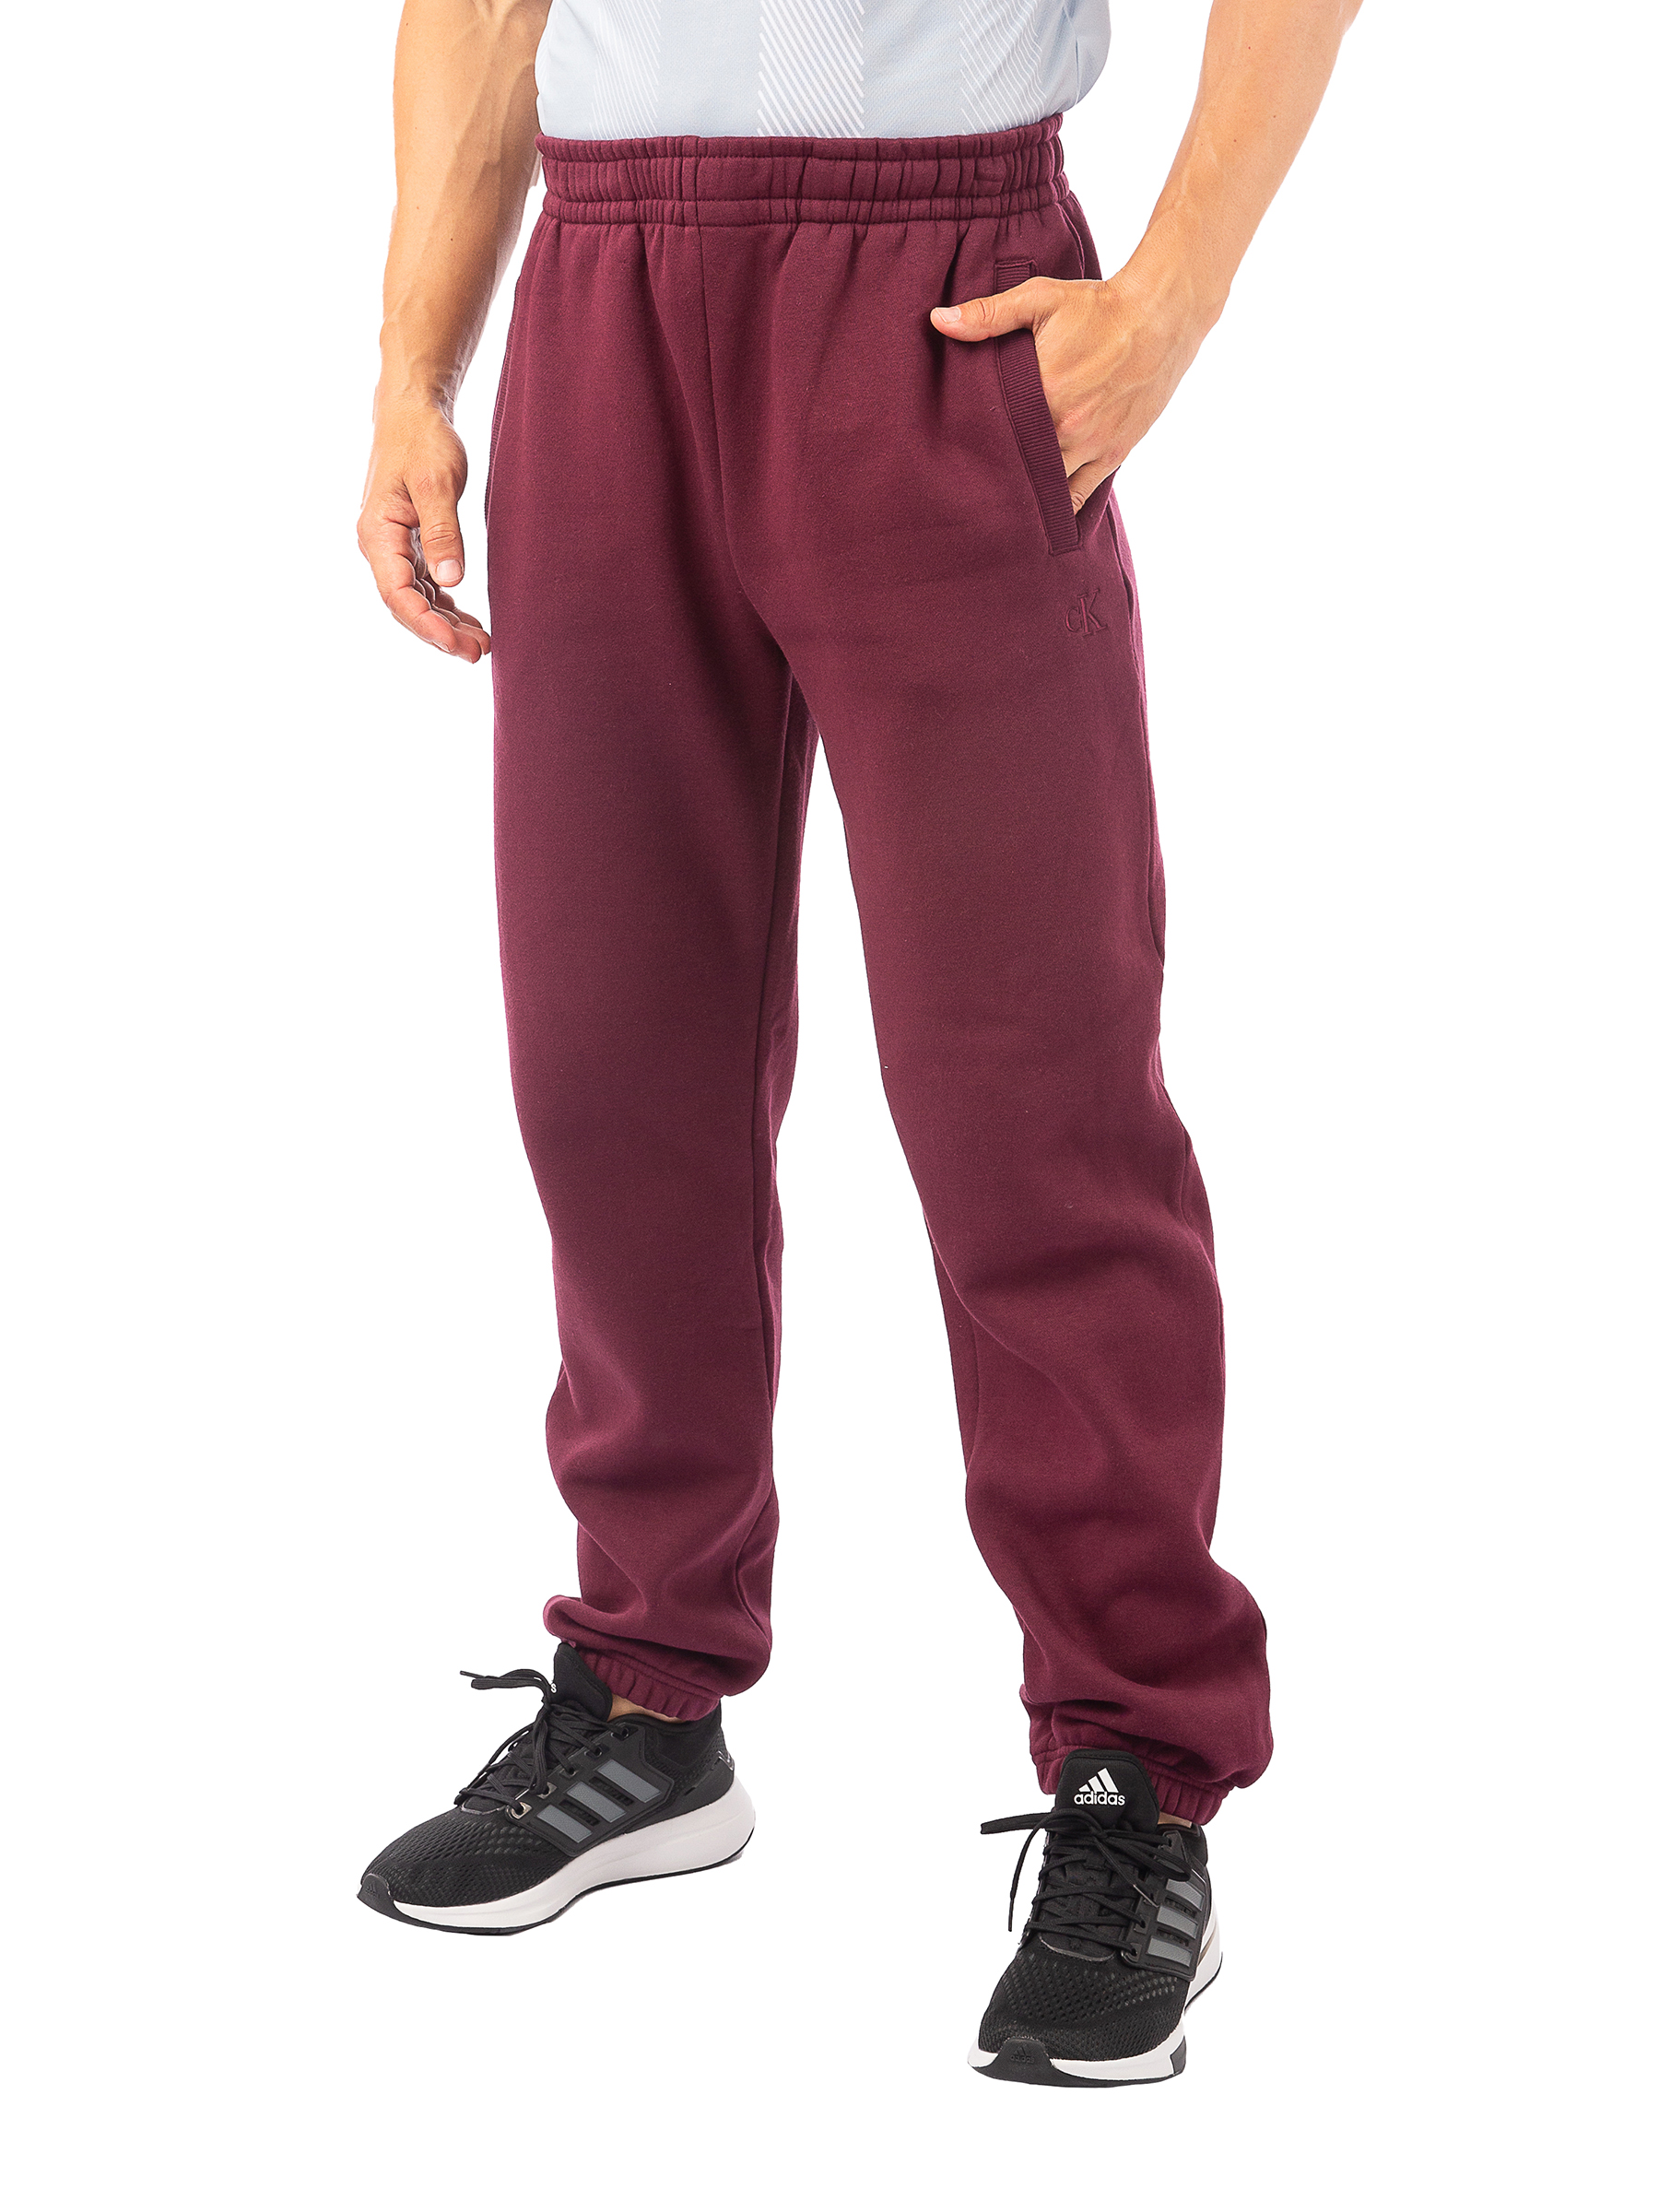 Спортивные брюки мужские Calvin Klein Archive Logo Fleece 40HM257 бордовые, размер 2XL